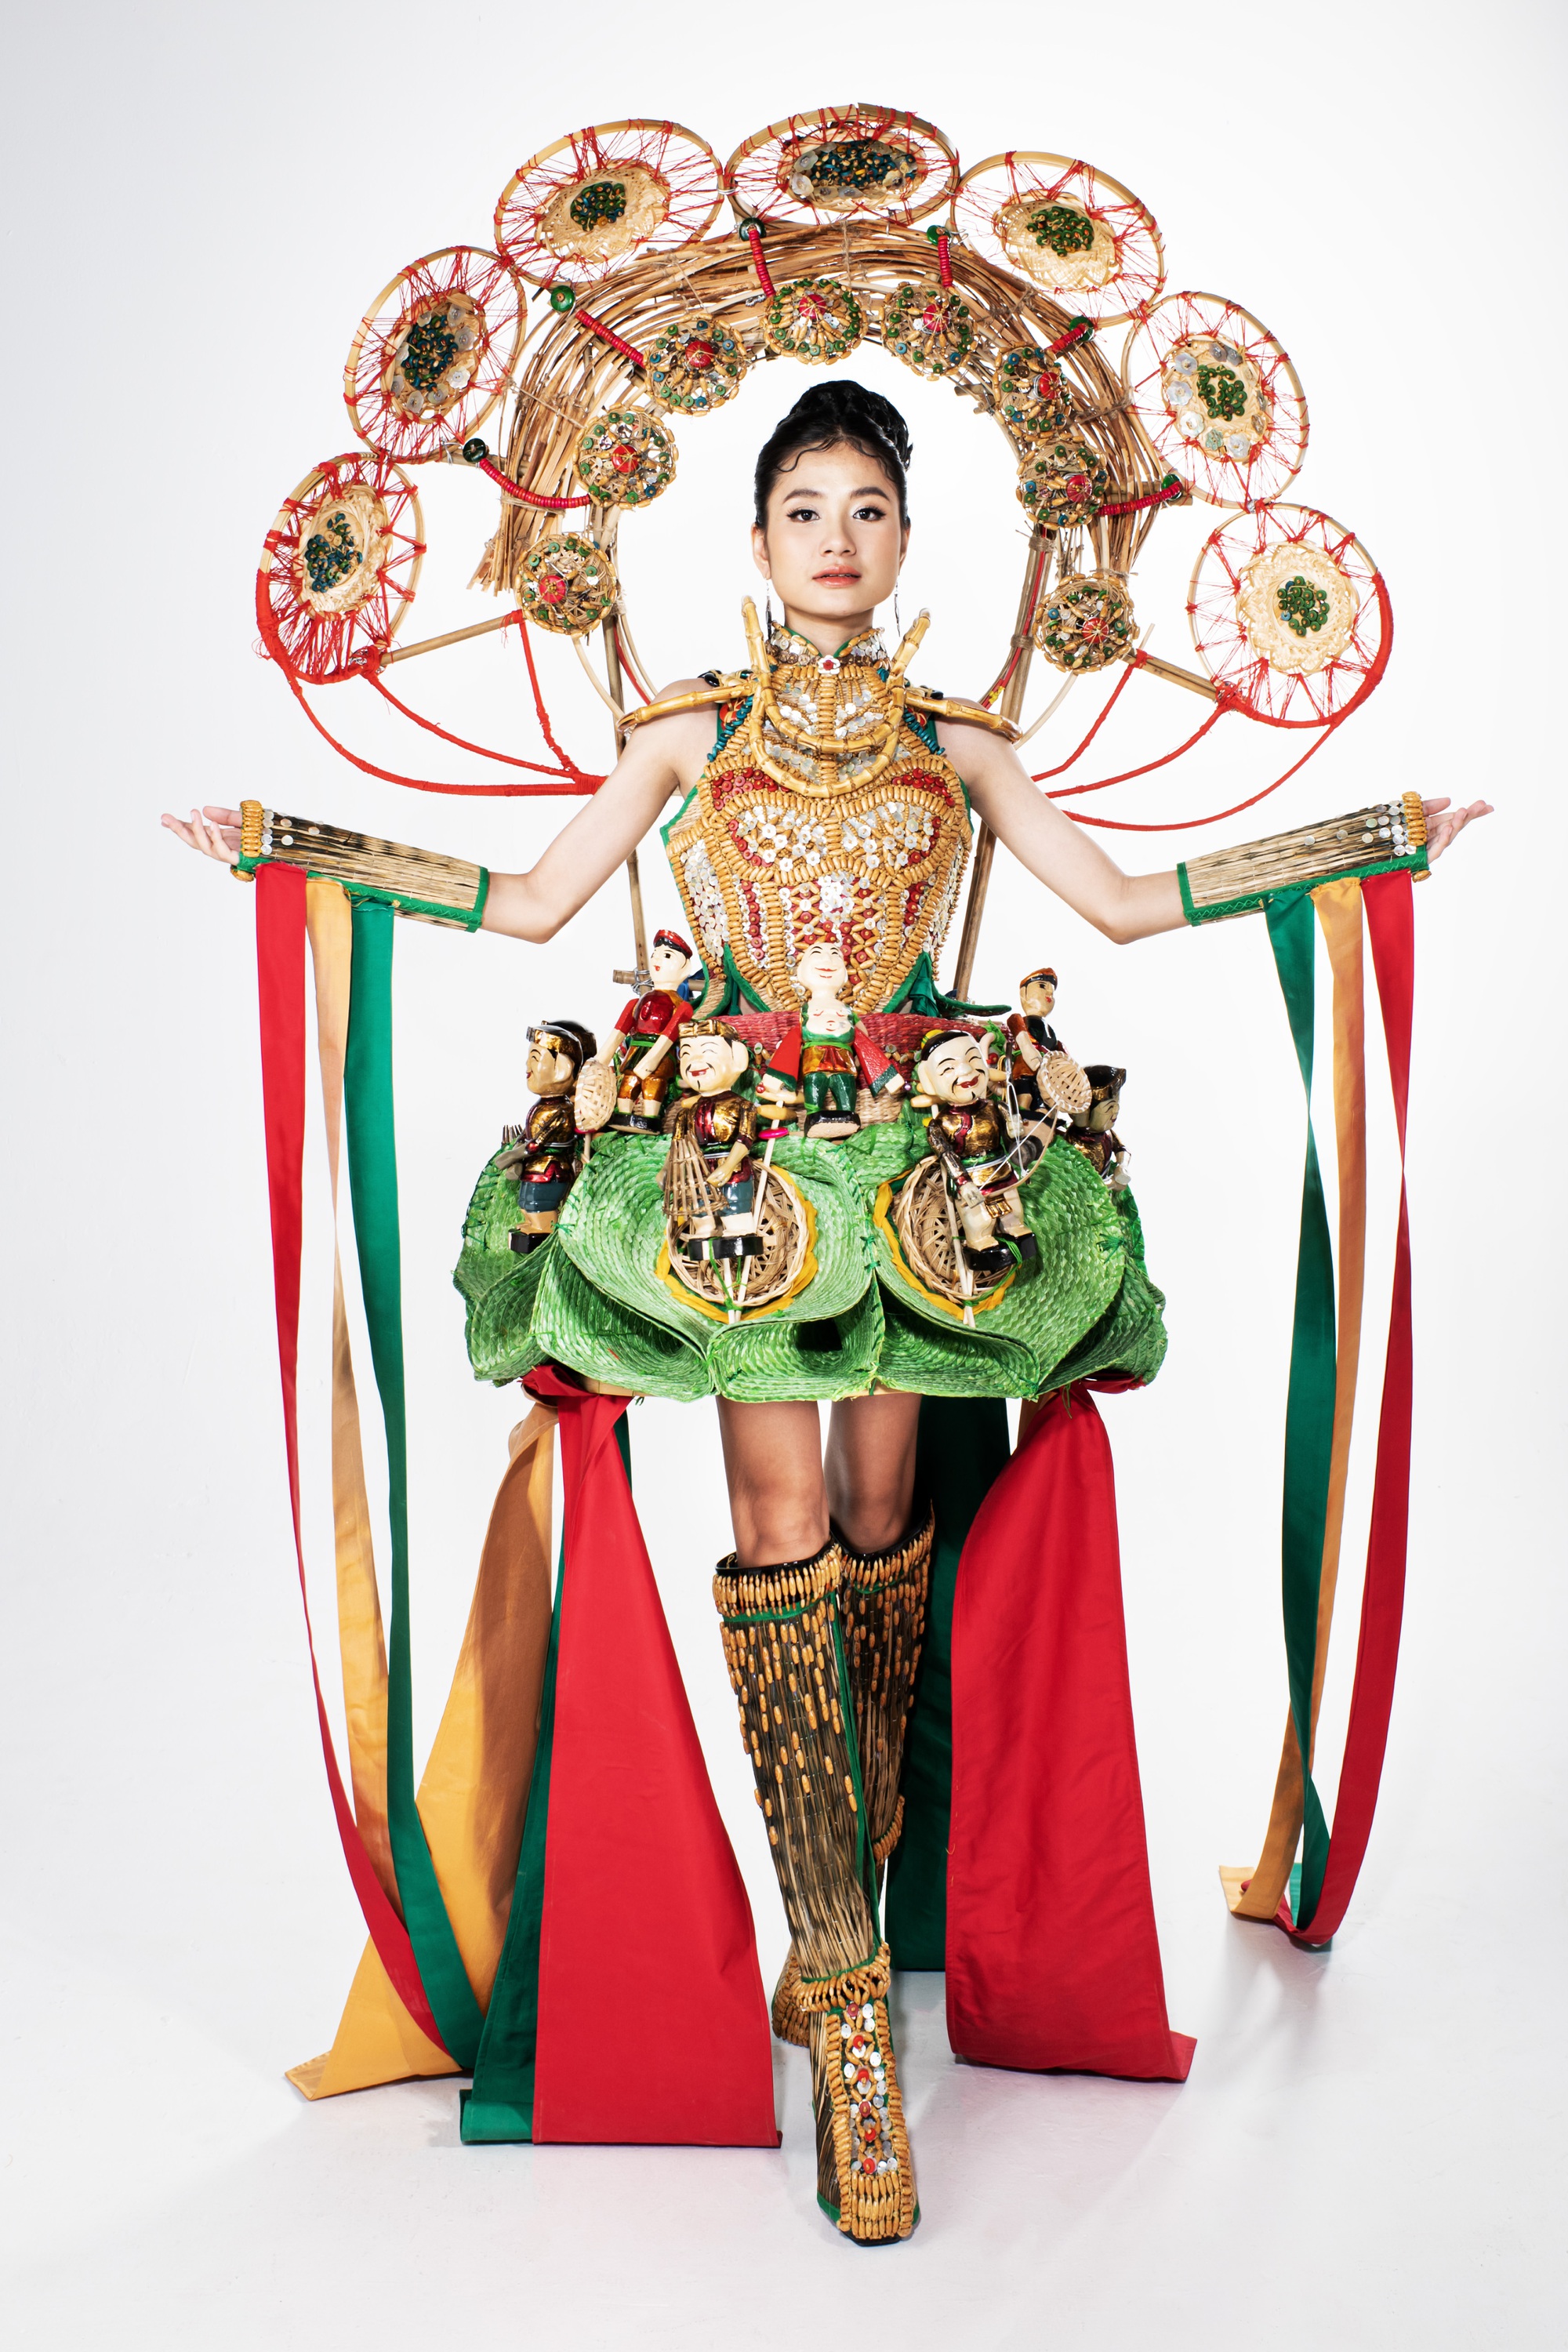 Miss Eco Việt Nam Nguyễn Thanh Hà rạng rỡ "Hồn nước" và "Sống xanh"